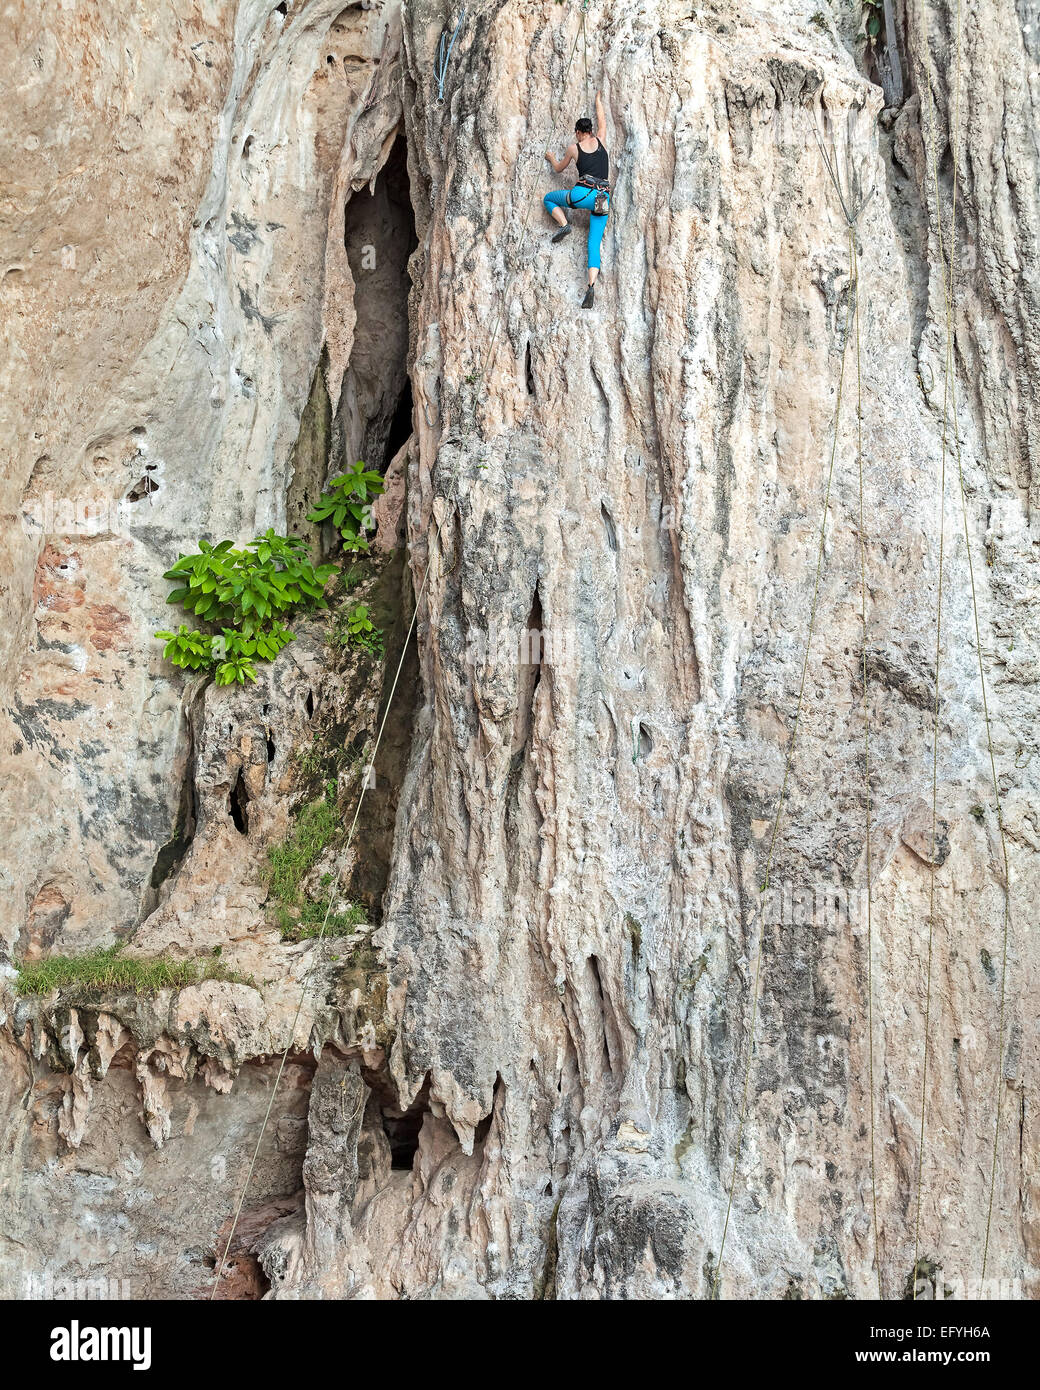 Las hembras jóvenes de escalador, concepto para superar los obstáculos. Foto de stock